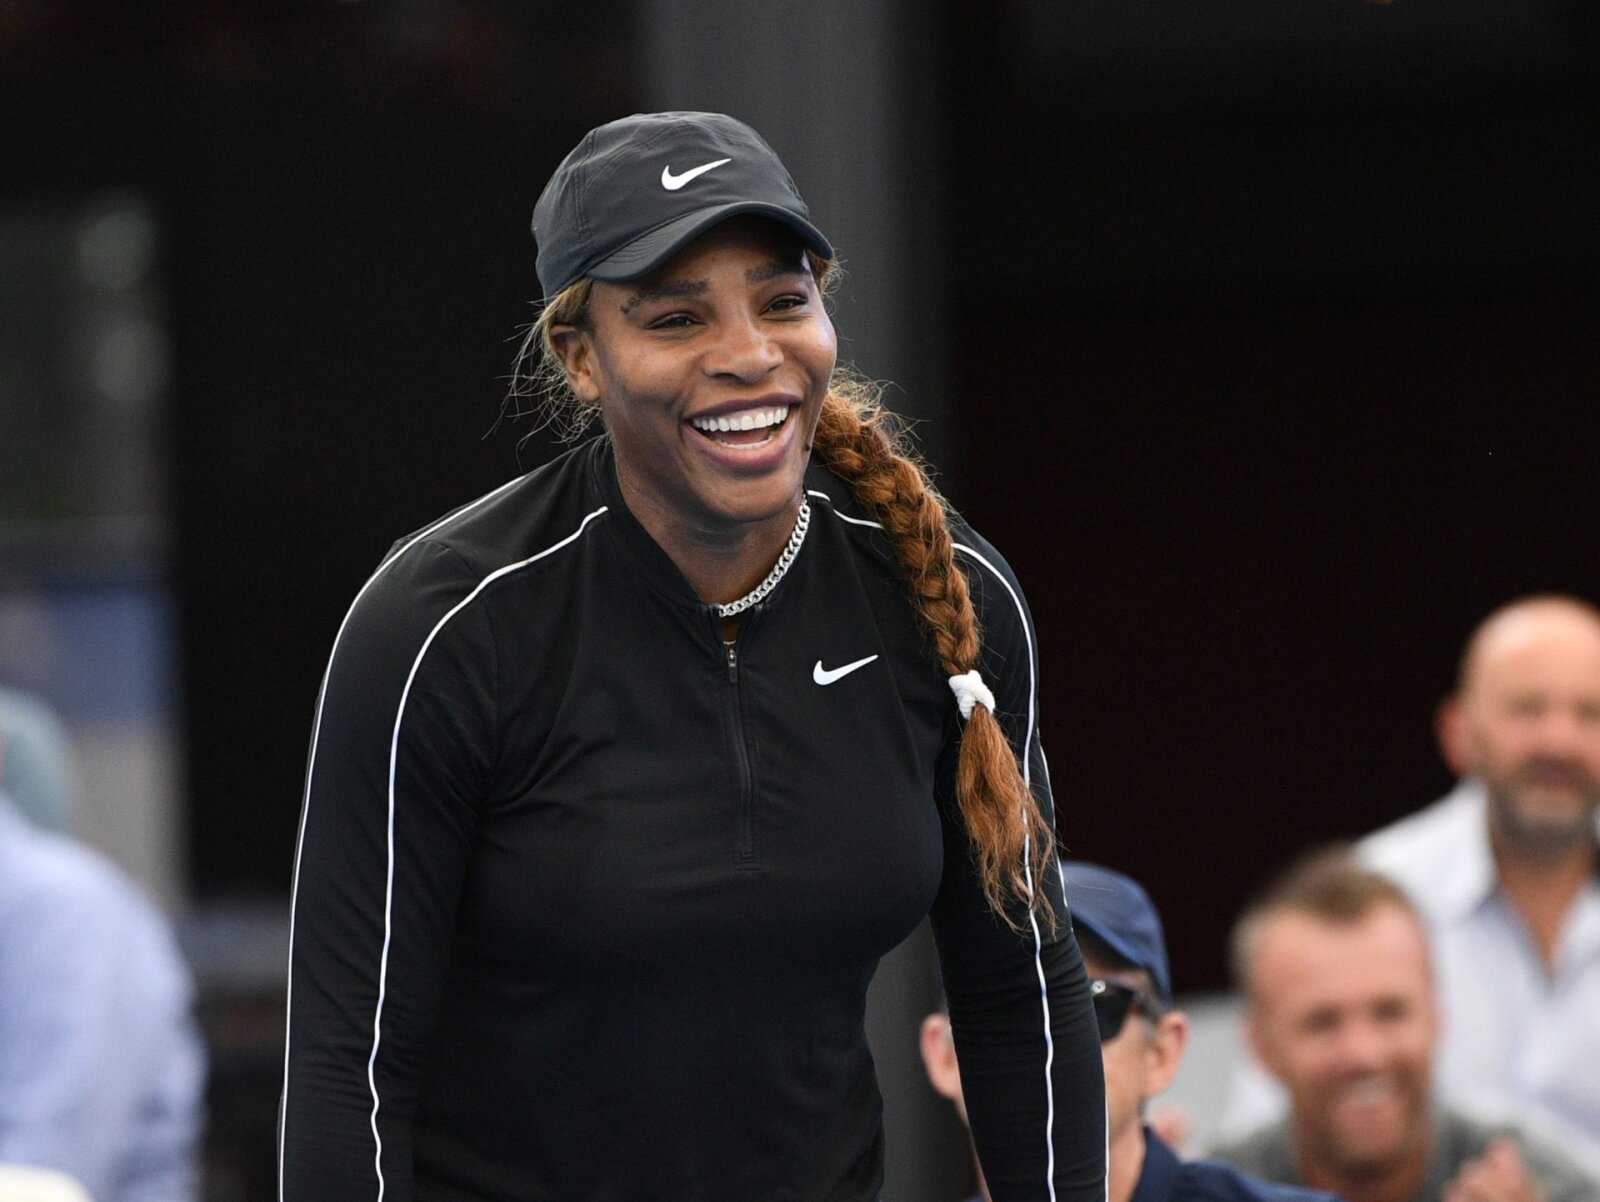 REGARDER: Quand Serena Williams frappe involontairement la balle sur son partenaire d'entraînement